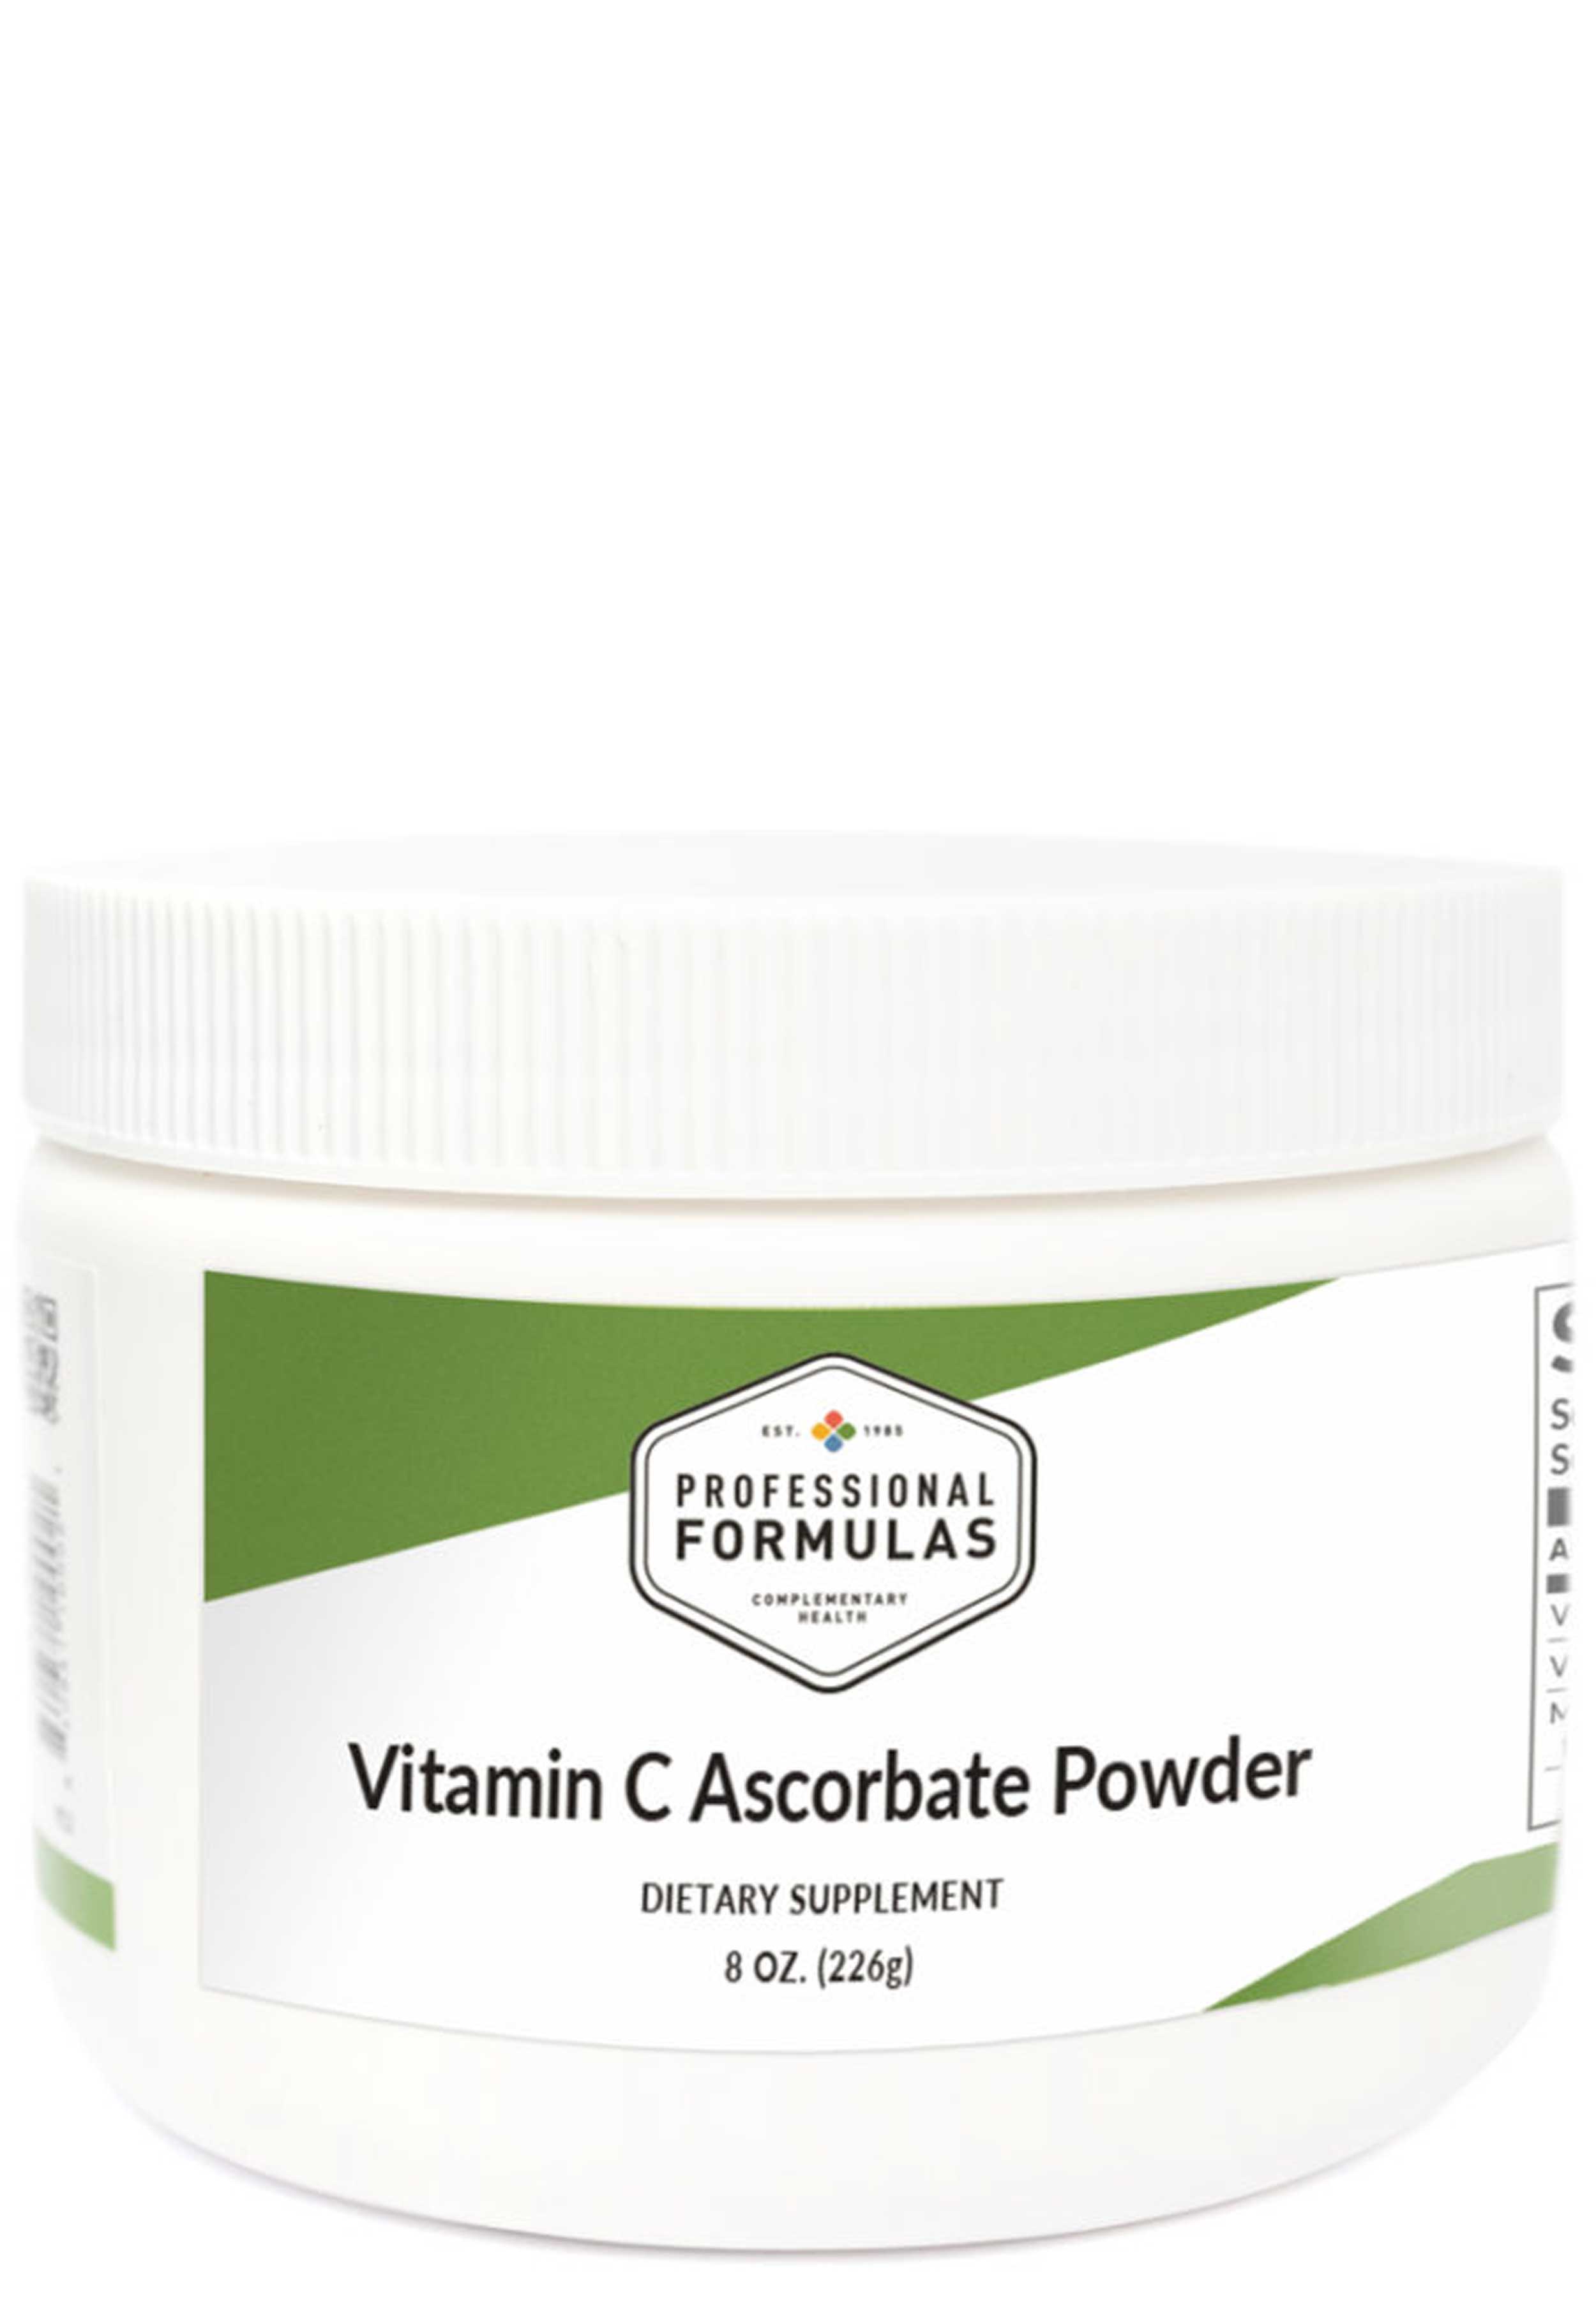 Professional Formulas Vitamin C Ascorbate